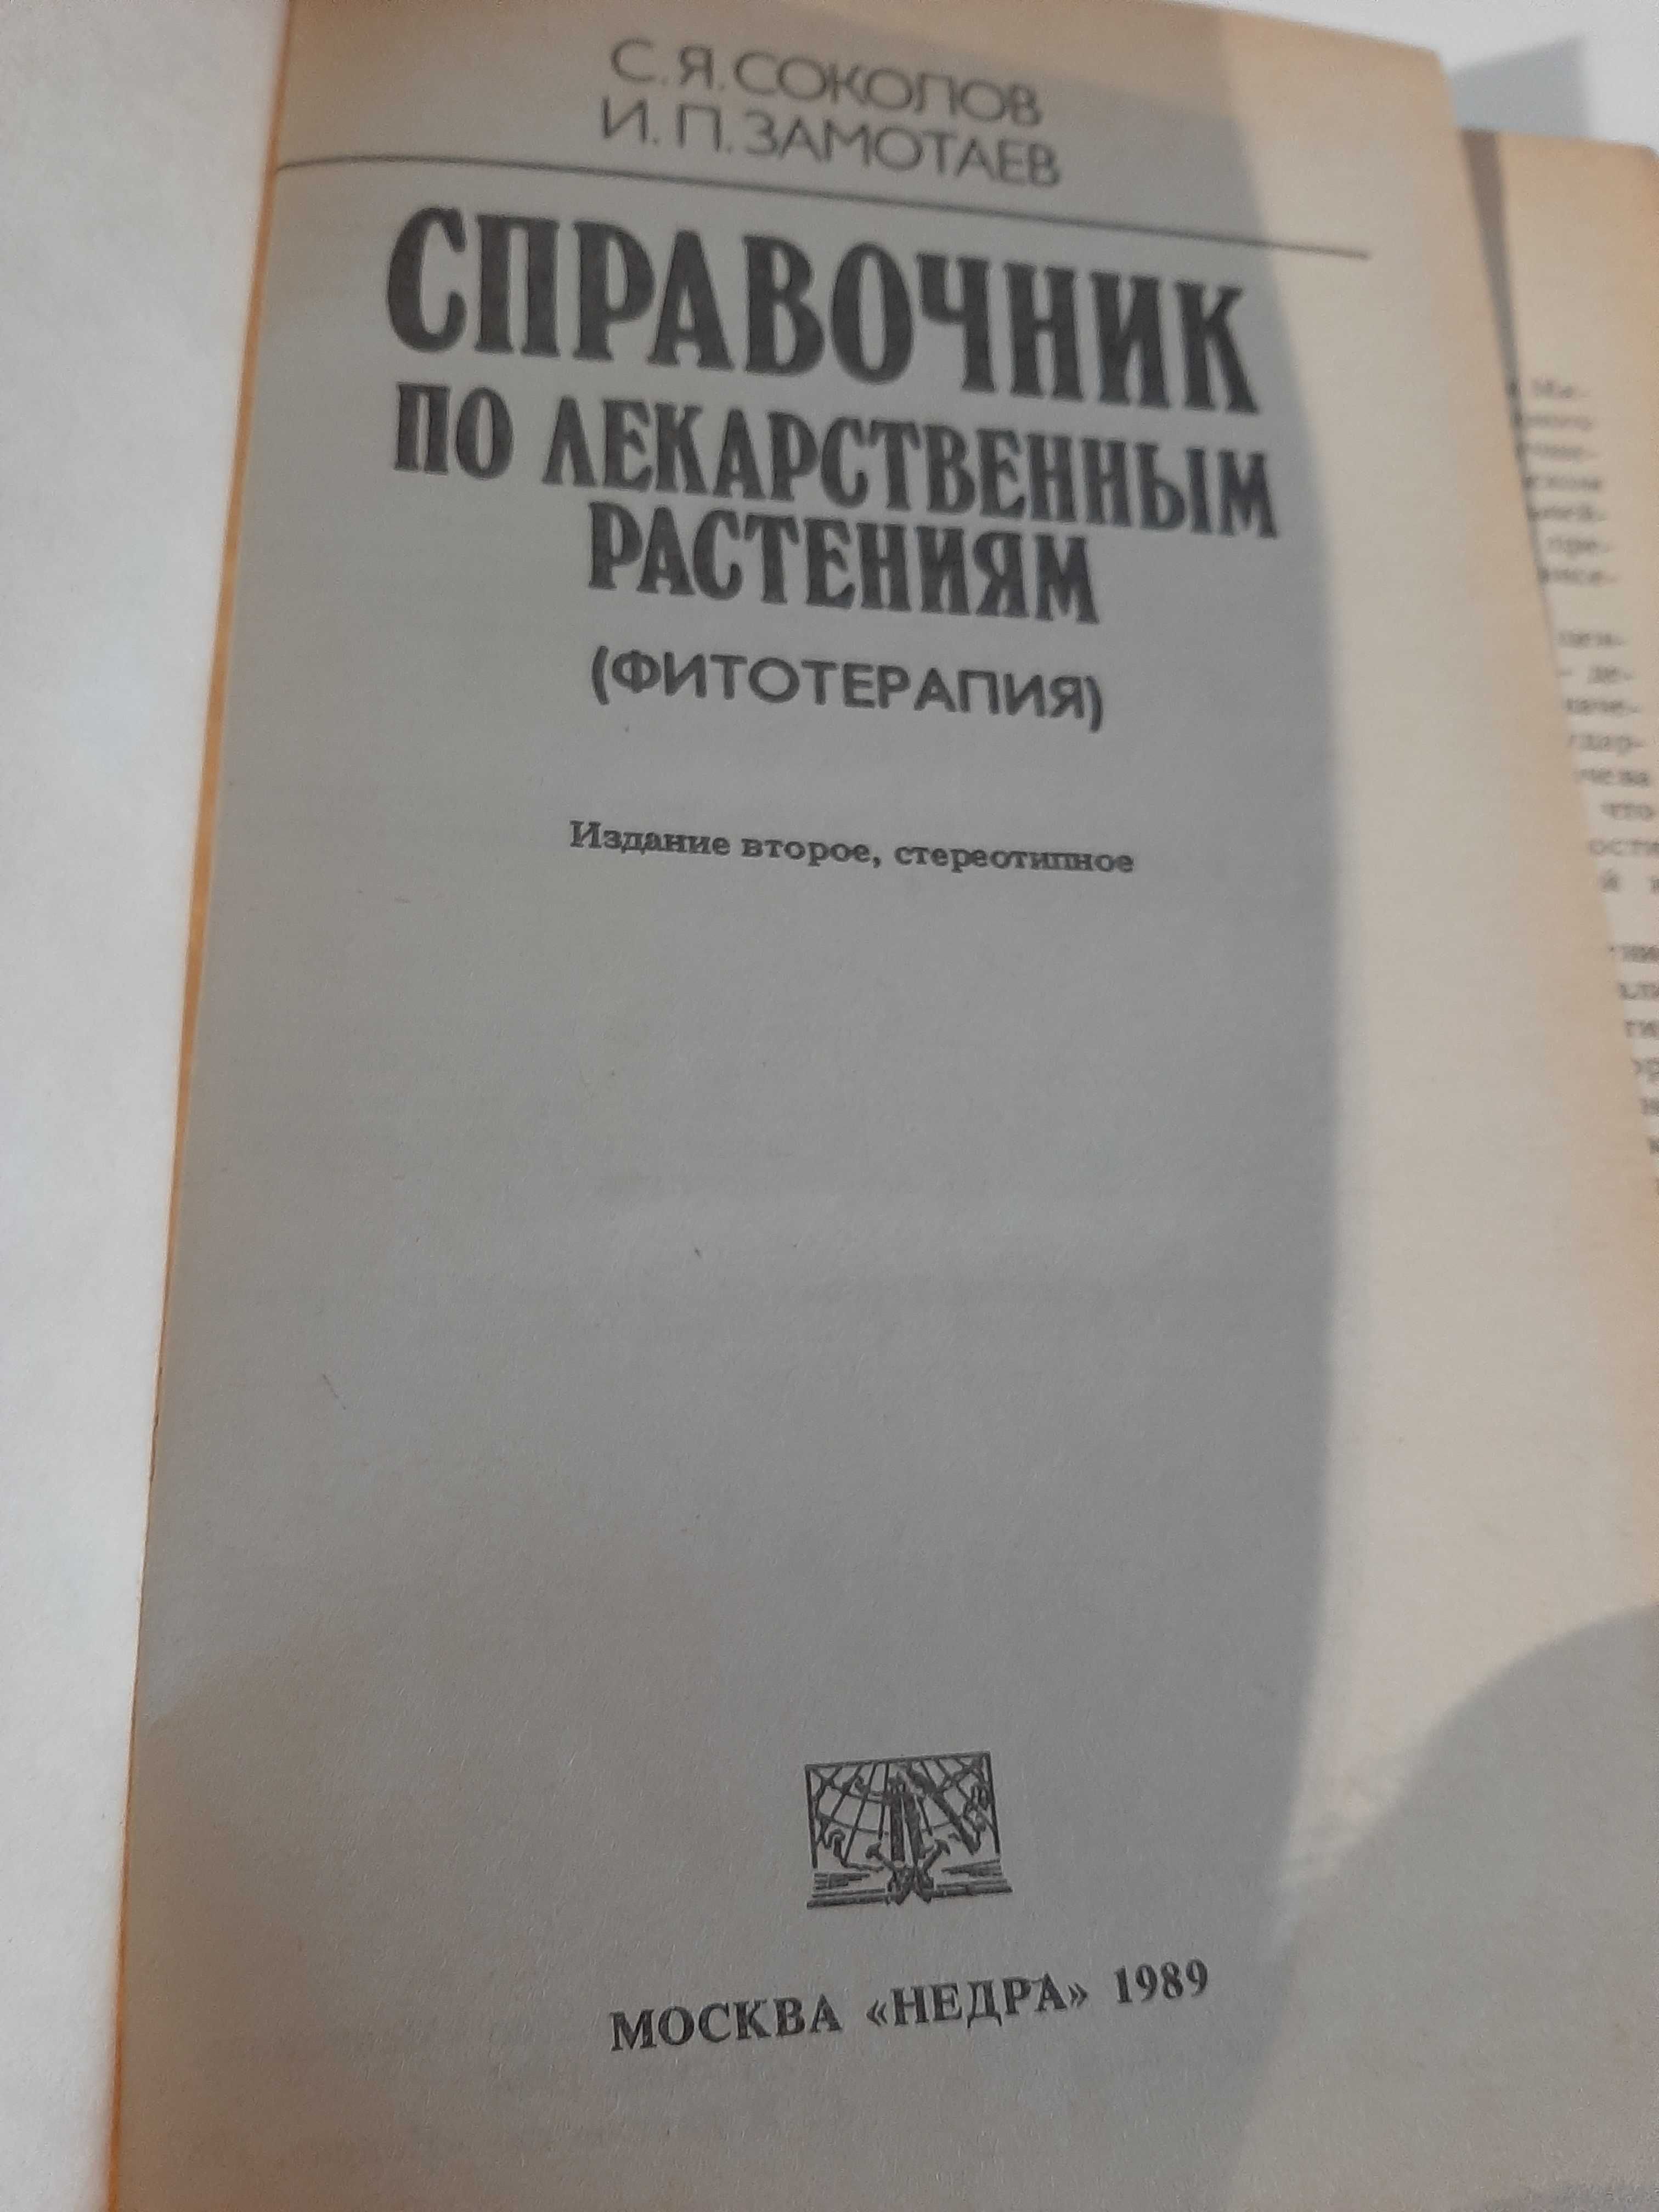 Соколов, С.Я.; Замотаев, И.П. Справочник по лекарственным растениям